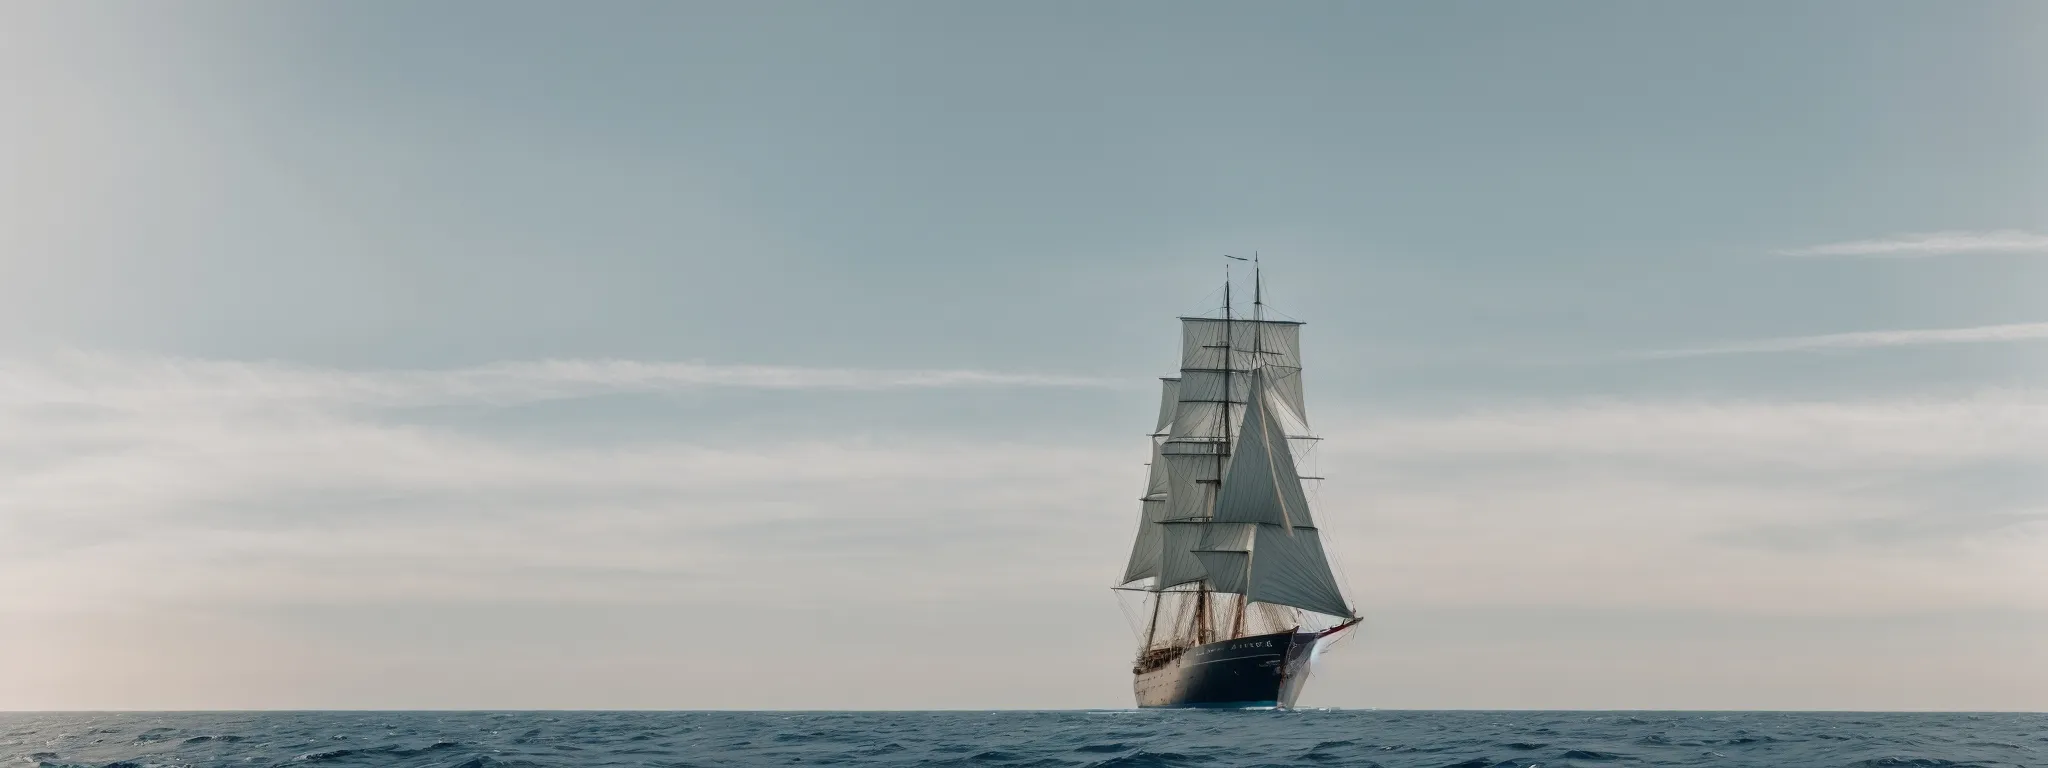 A Ship With A Distinctive Sail Navigates Through A Vast, Open Sea Towards The Horizon.